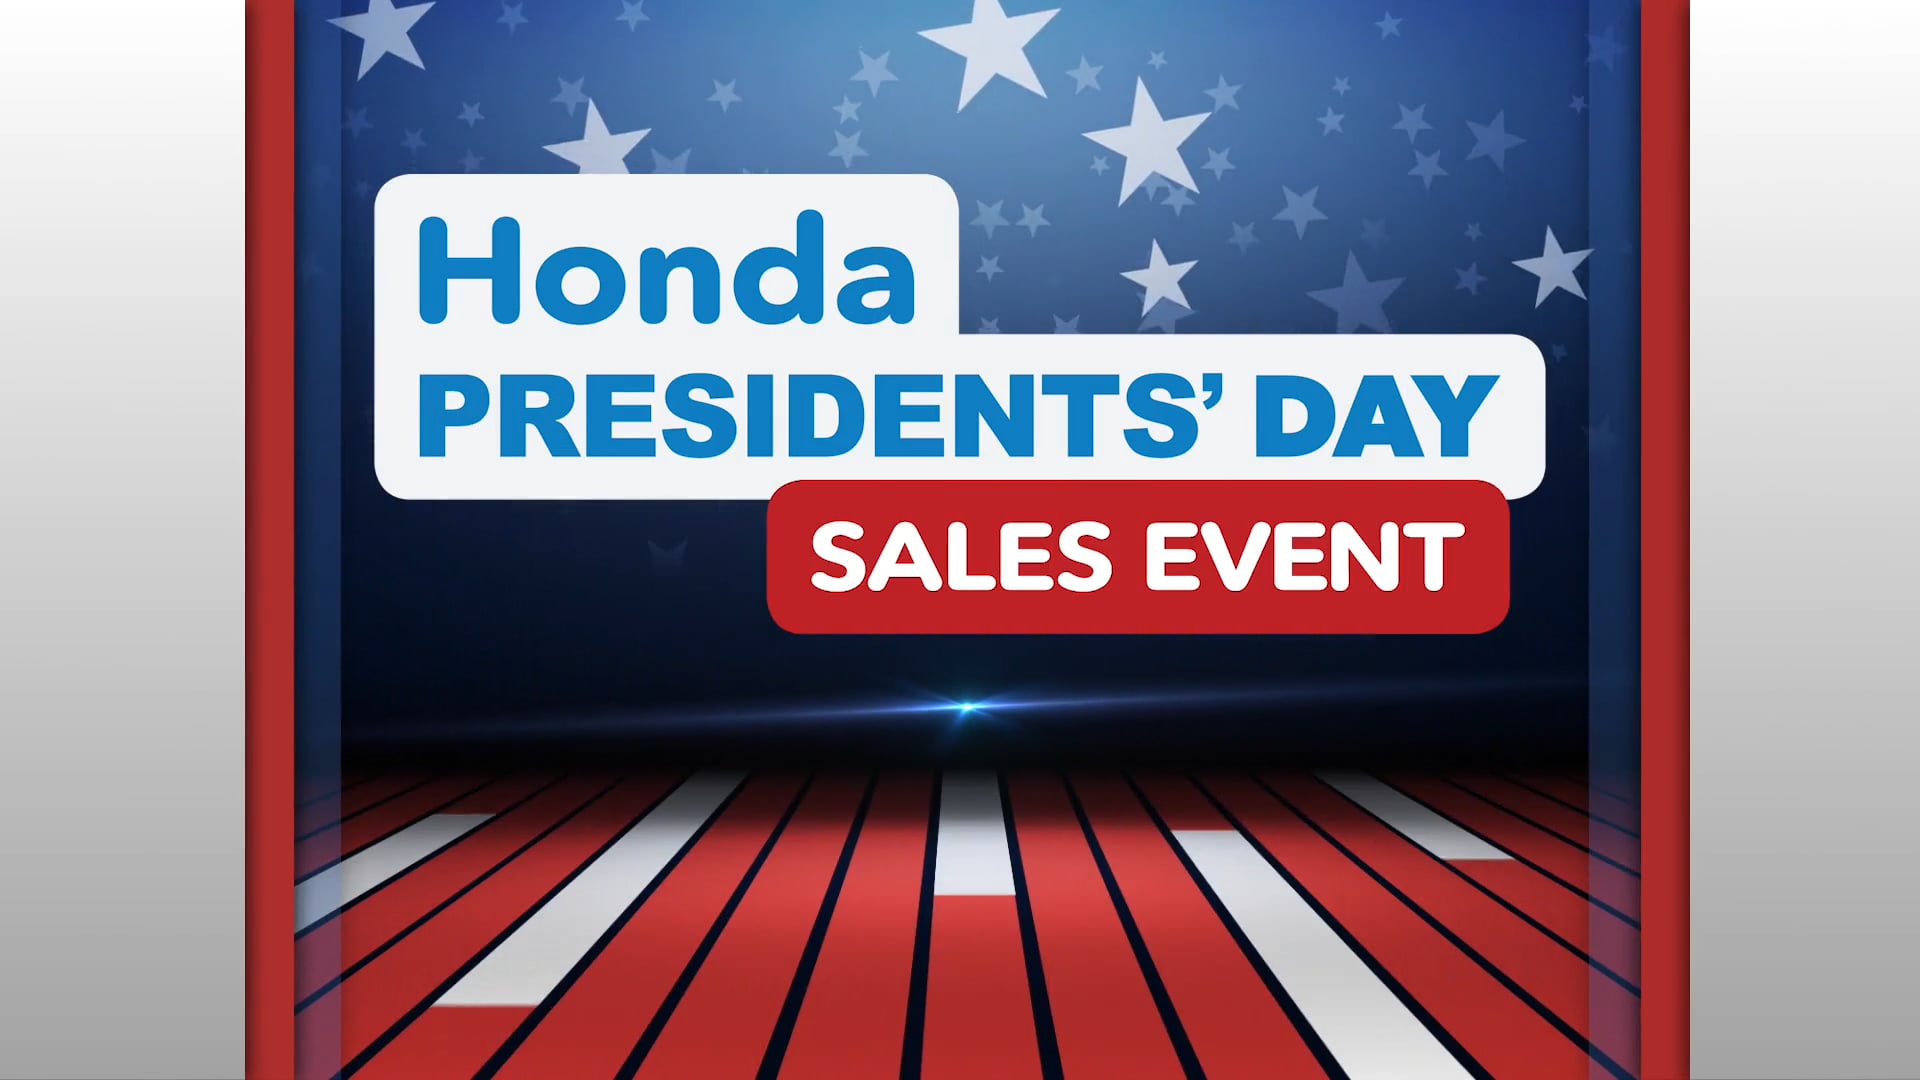 Honda Honda Presidents Day Sales Event 1697b on Vimeo